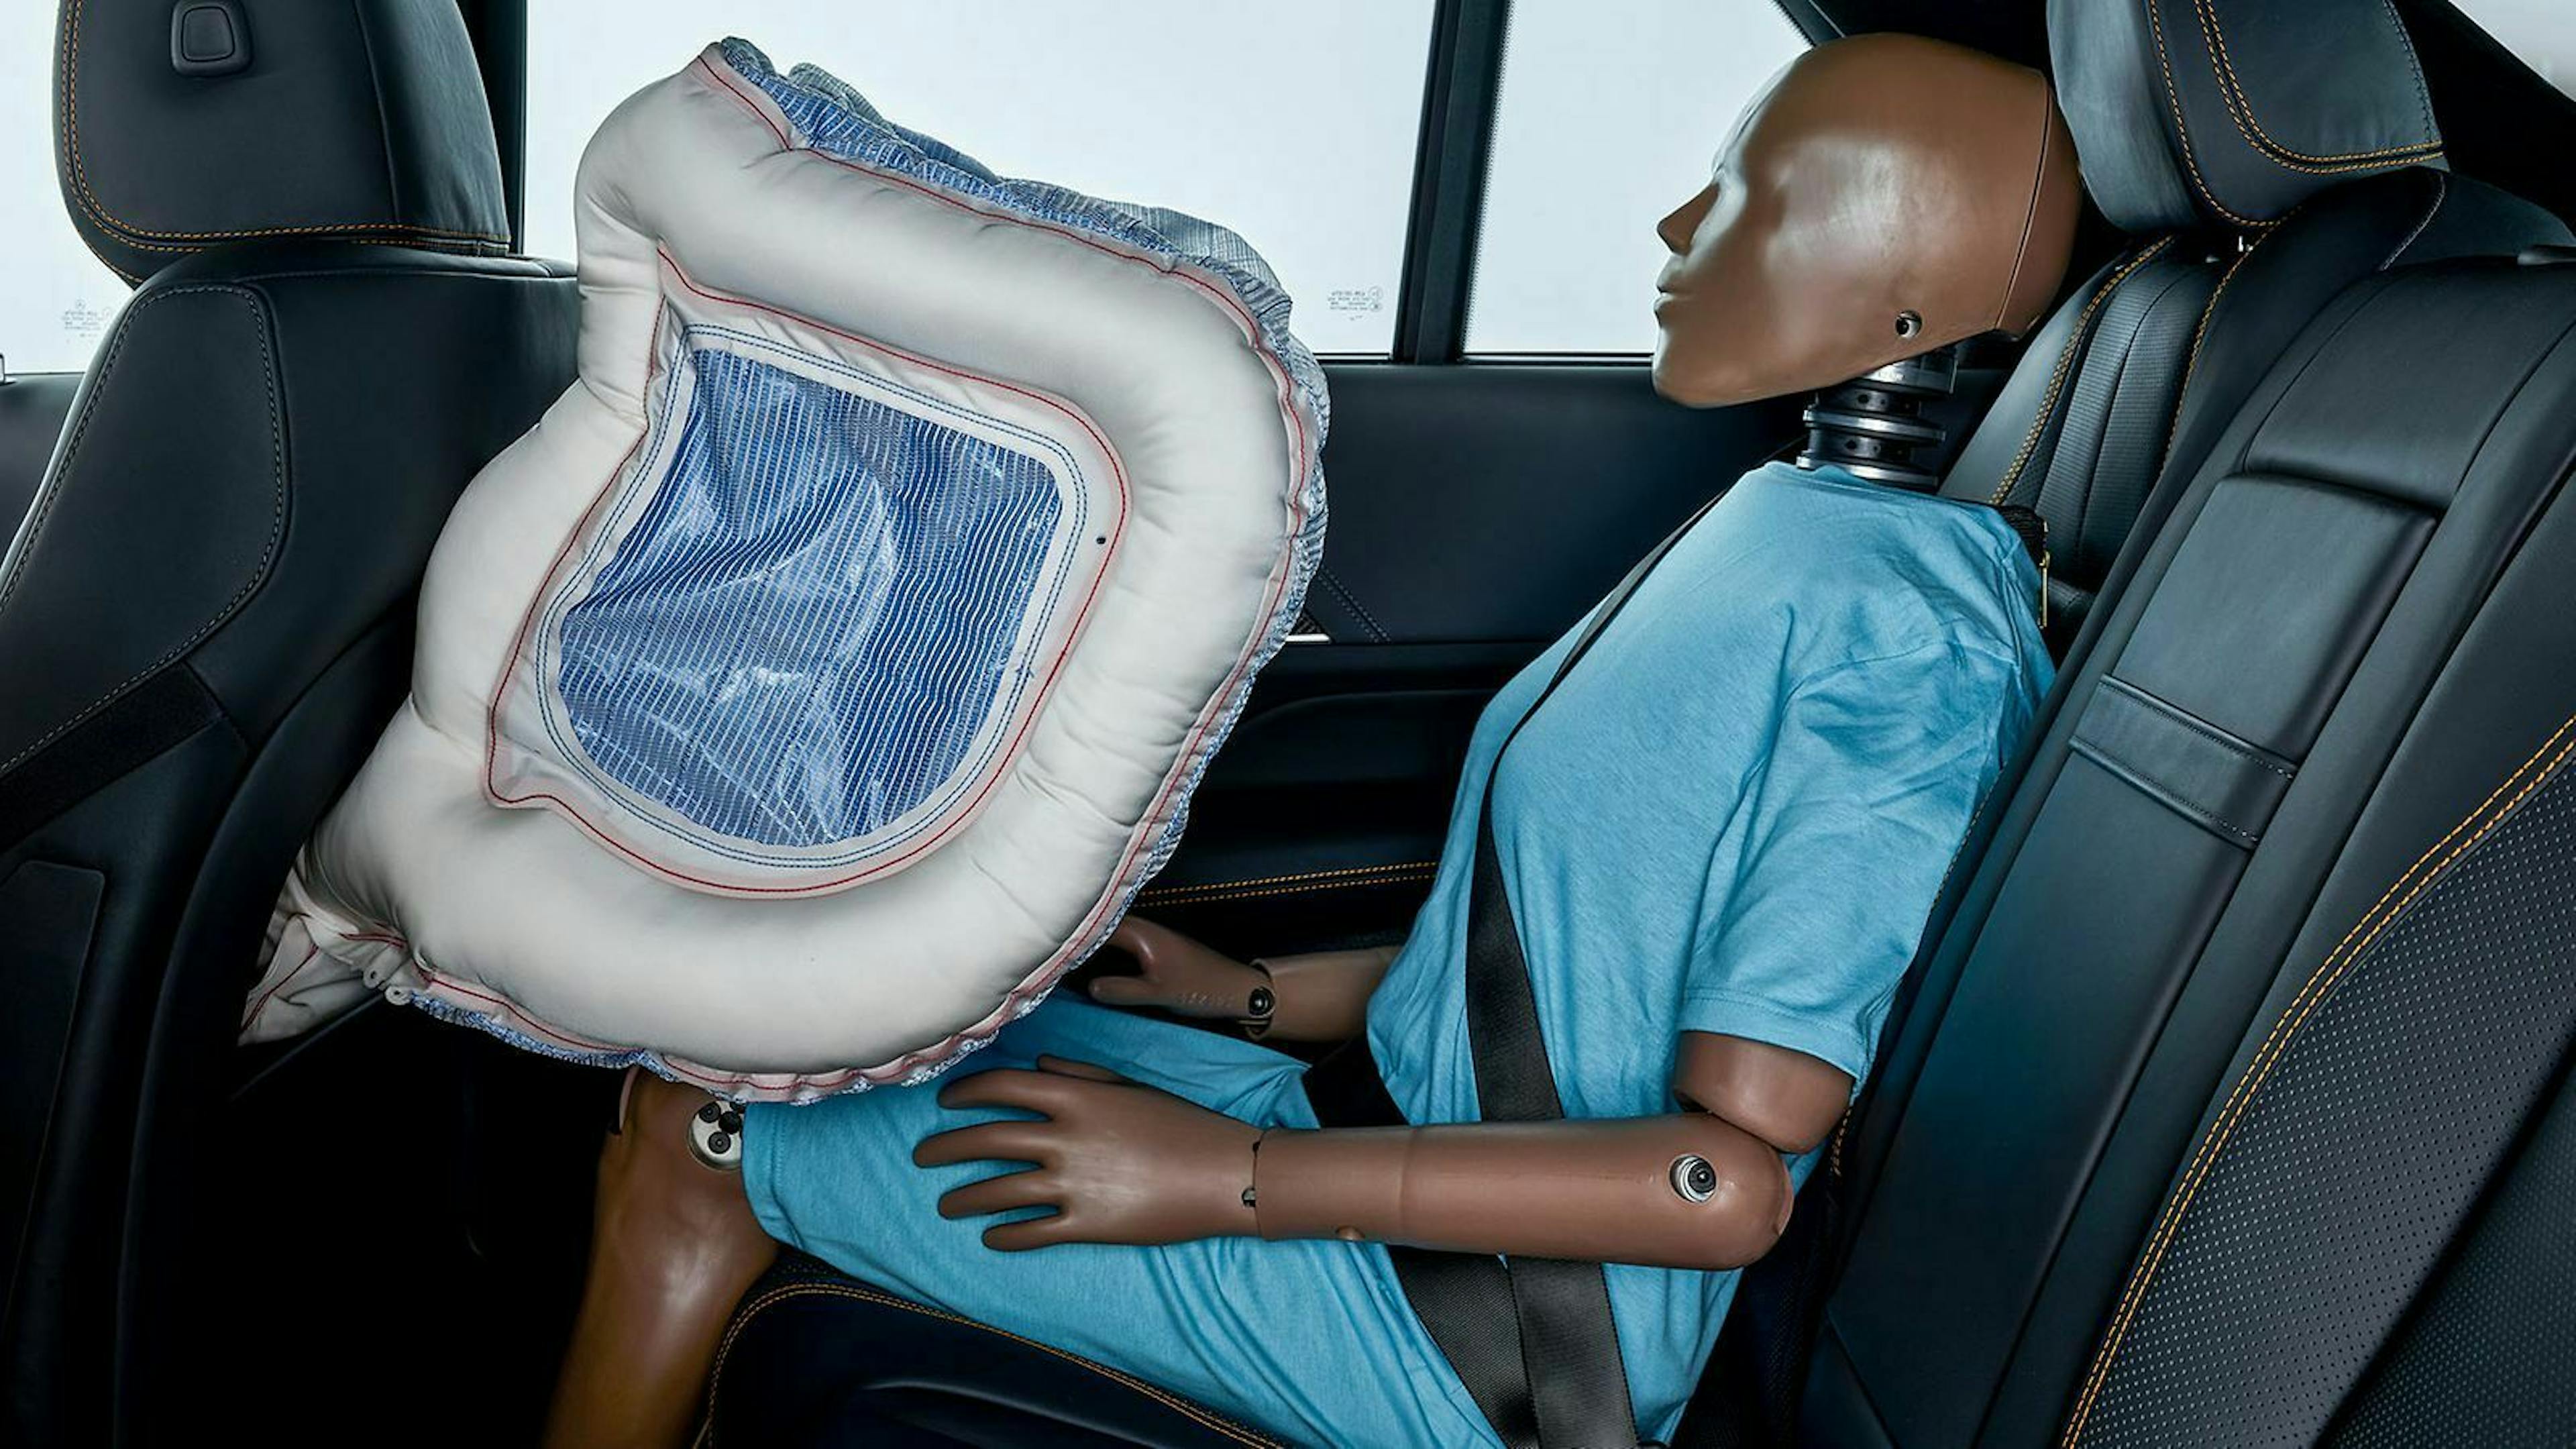 Für Hintensitzer gibt es einen neuartigen Airbag, der den kompletten Oberkörper und den Kopf umschließt